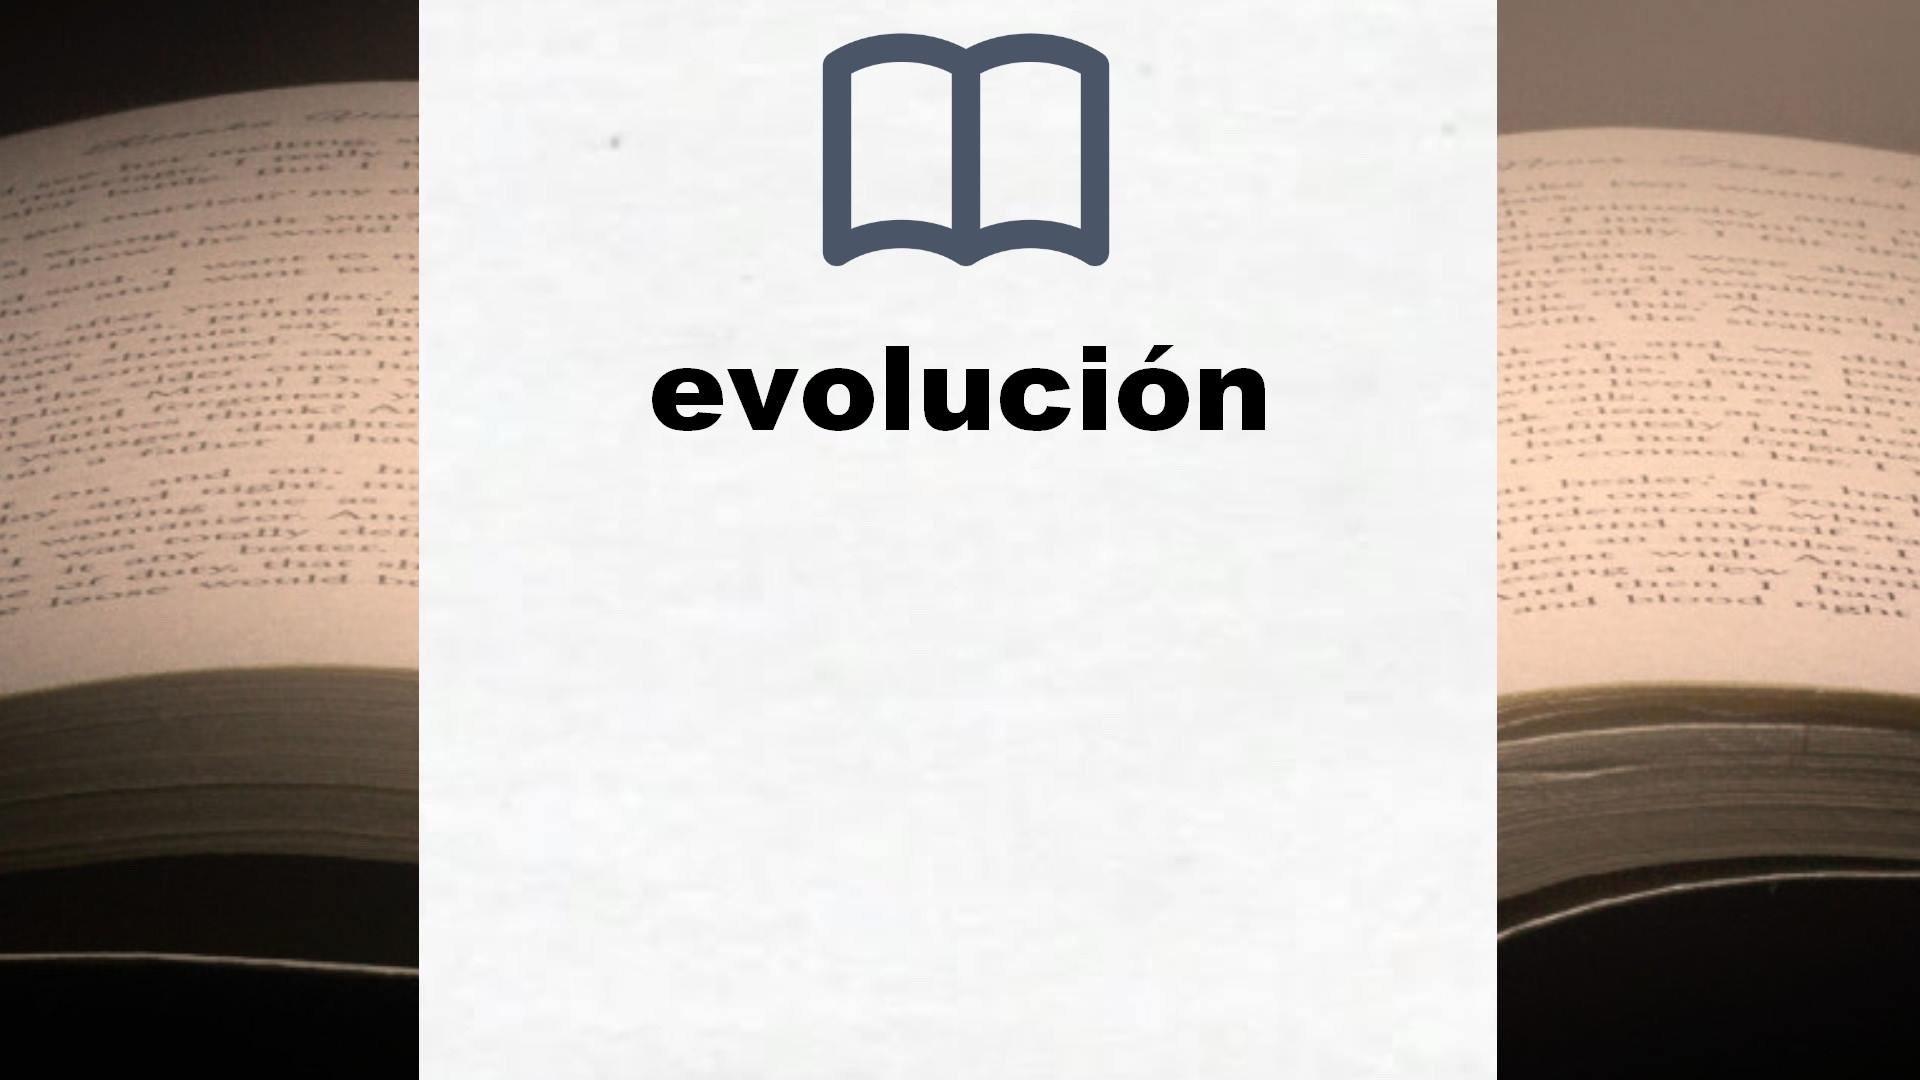 Libros sobre evolución